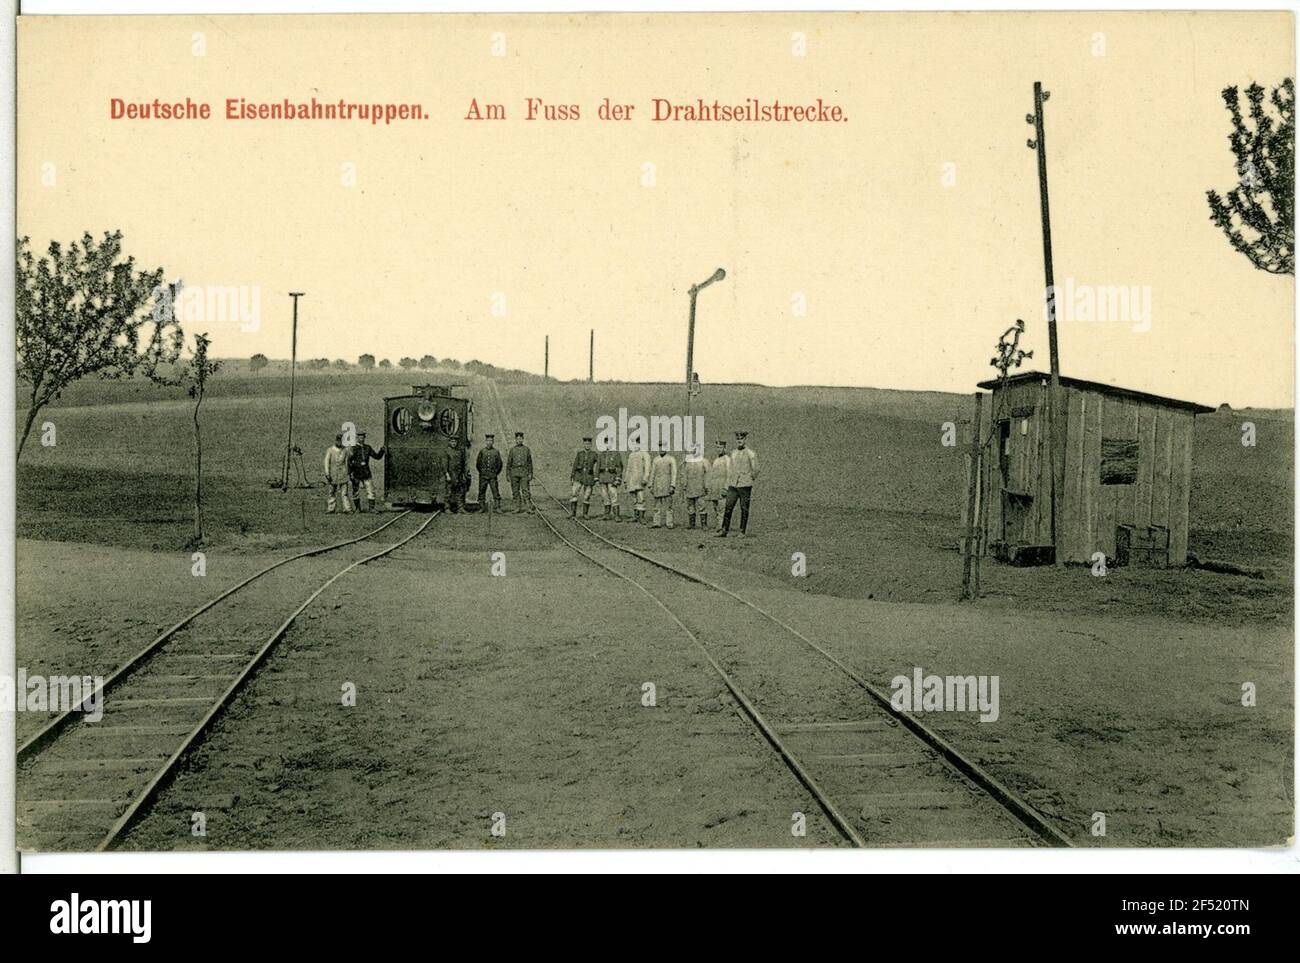 Troupes de chemin de fer allemandes au pied de la corde de fil troupes de chemin de fer allemandes. Au pied du câble métallique Banque D'Images